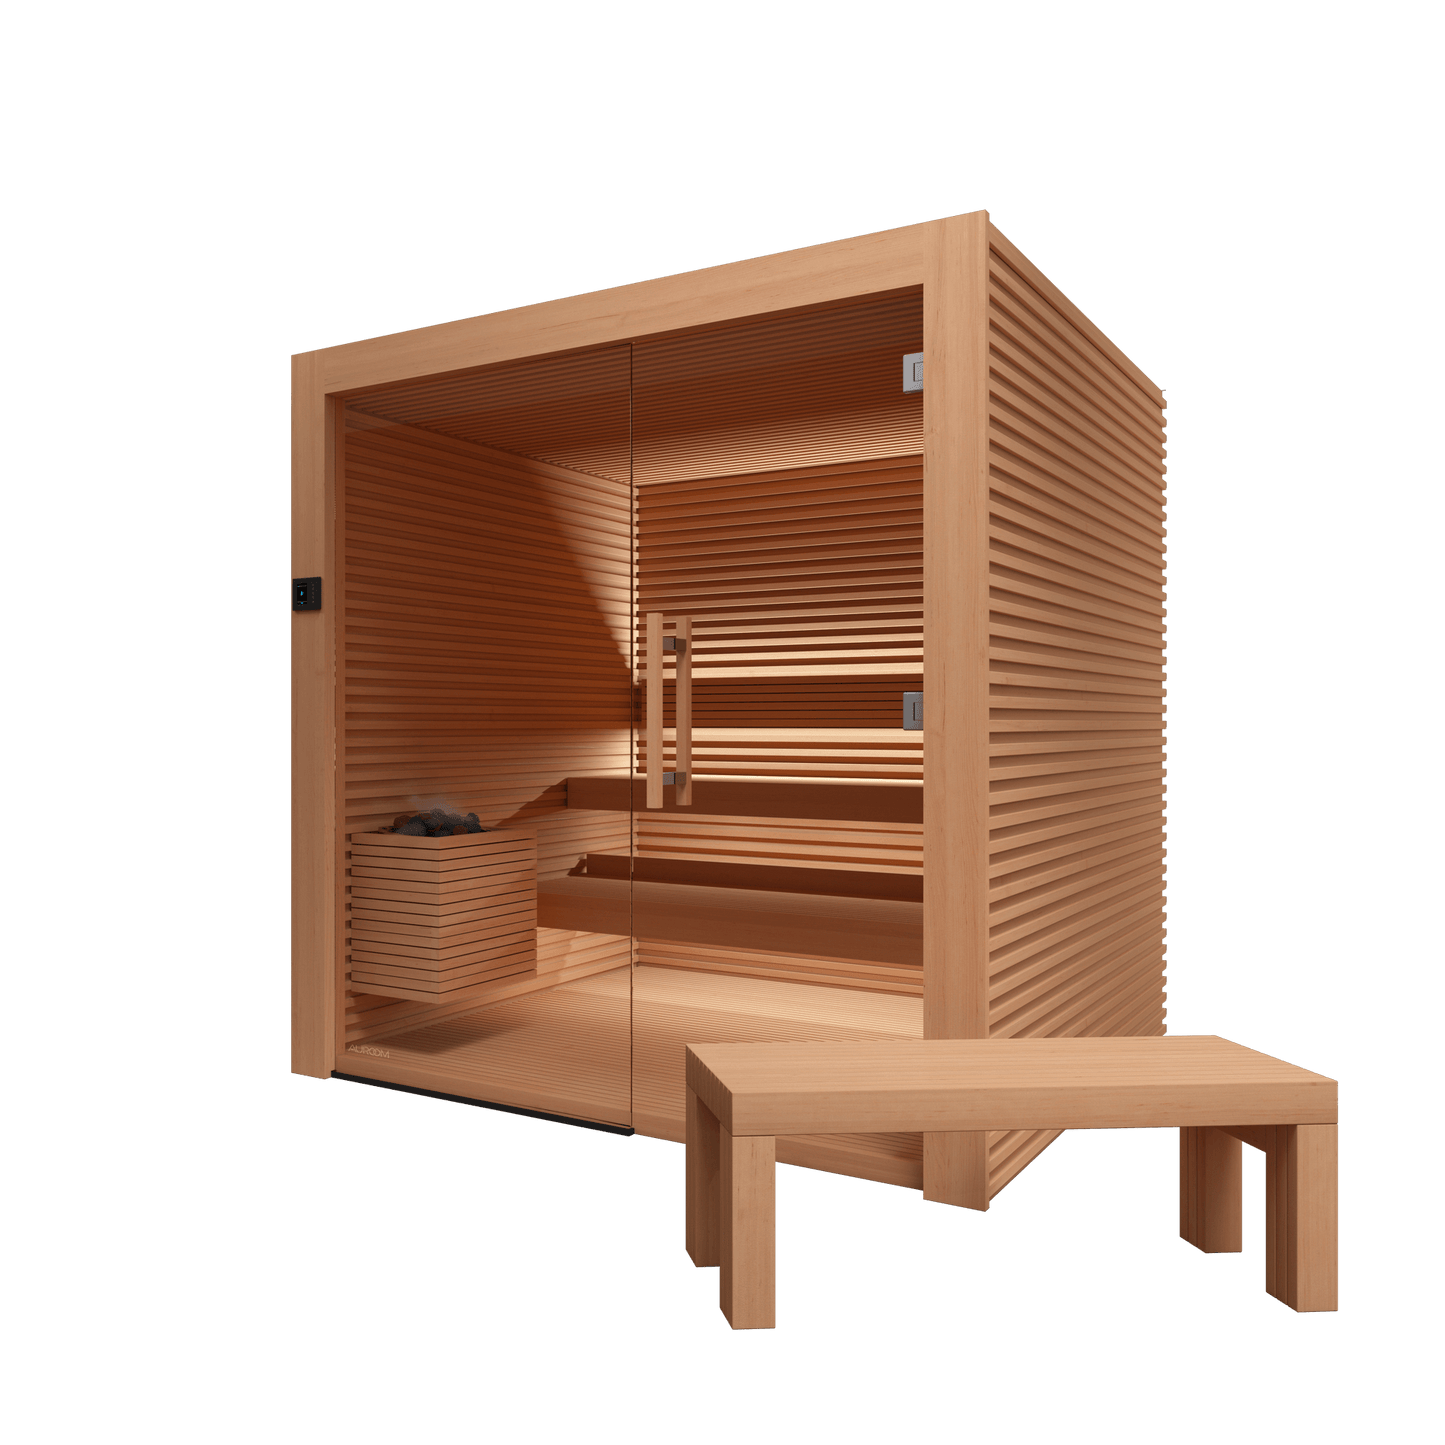 Auroom Nativa Cabin Sauna